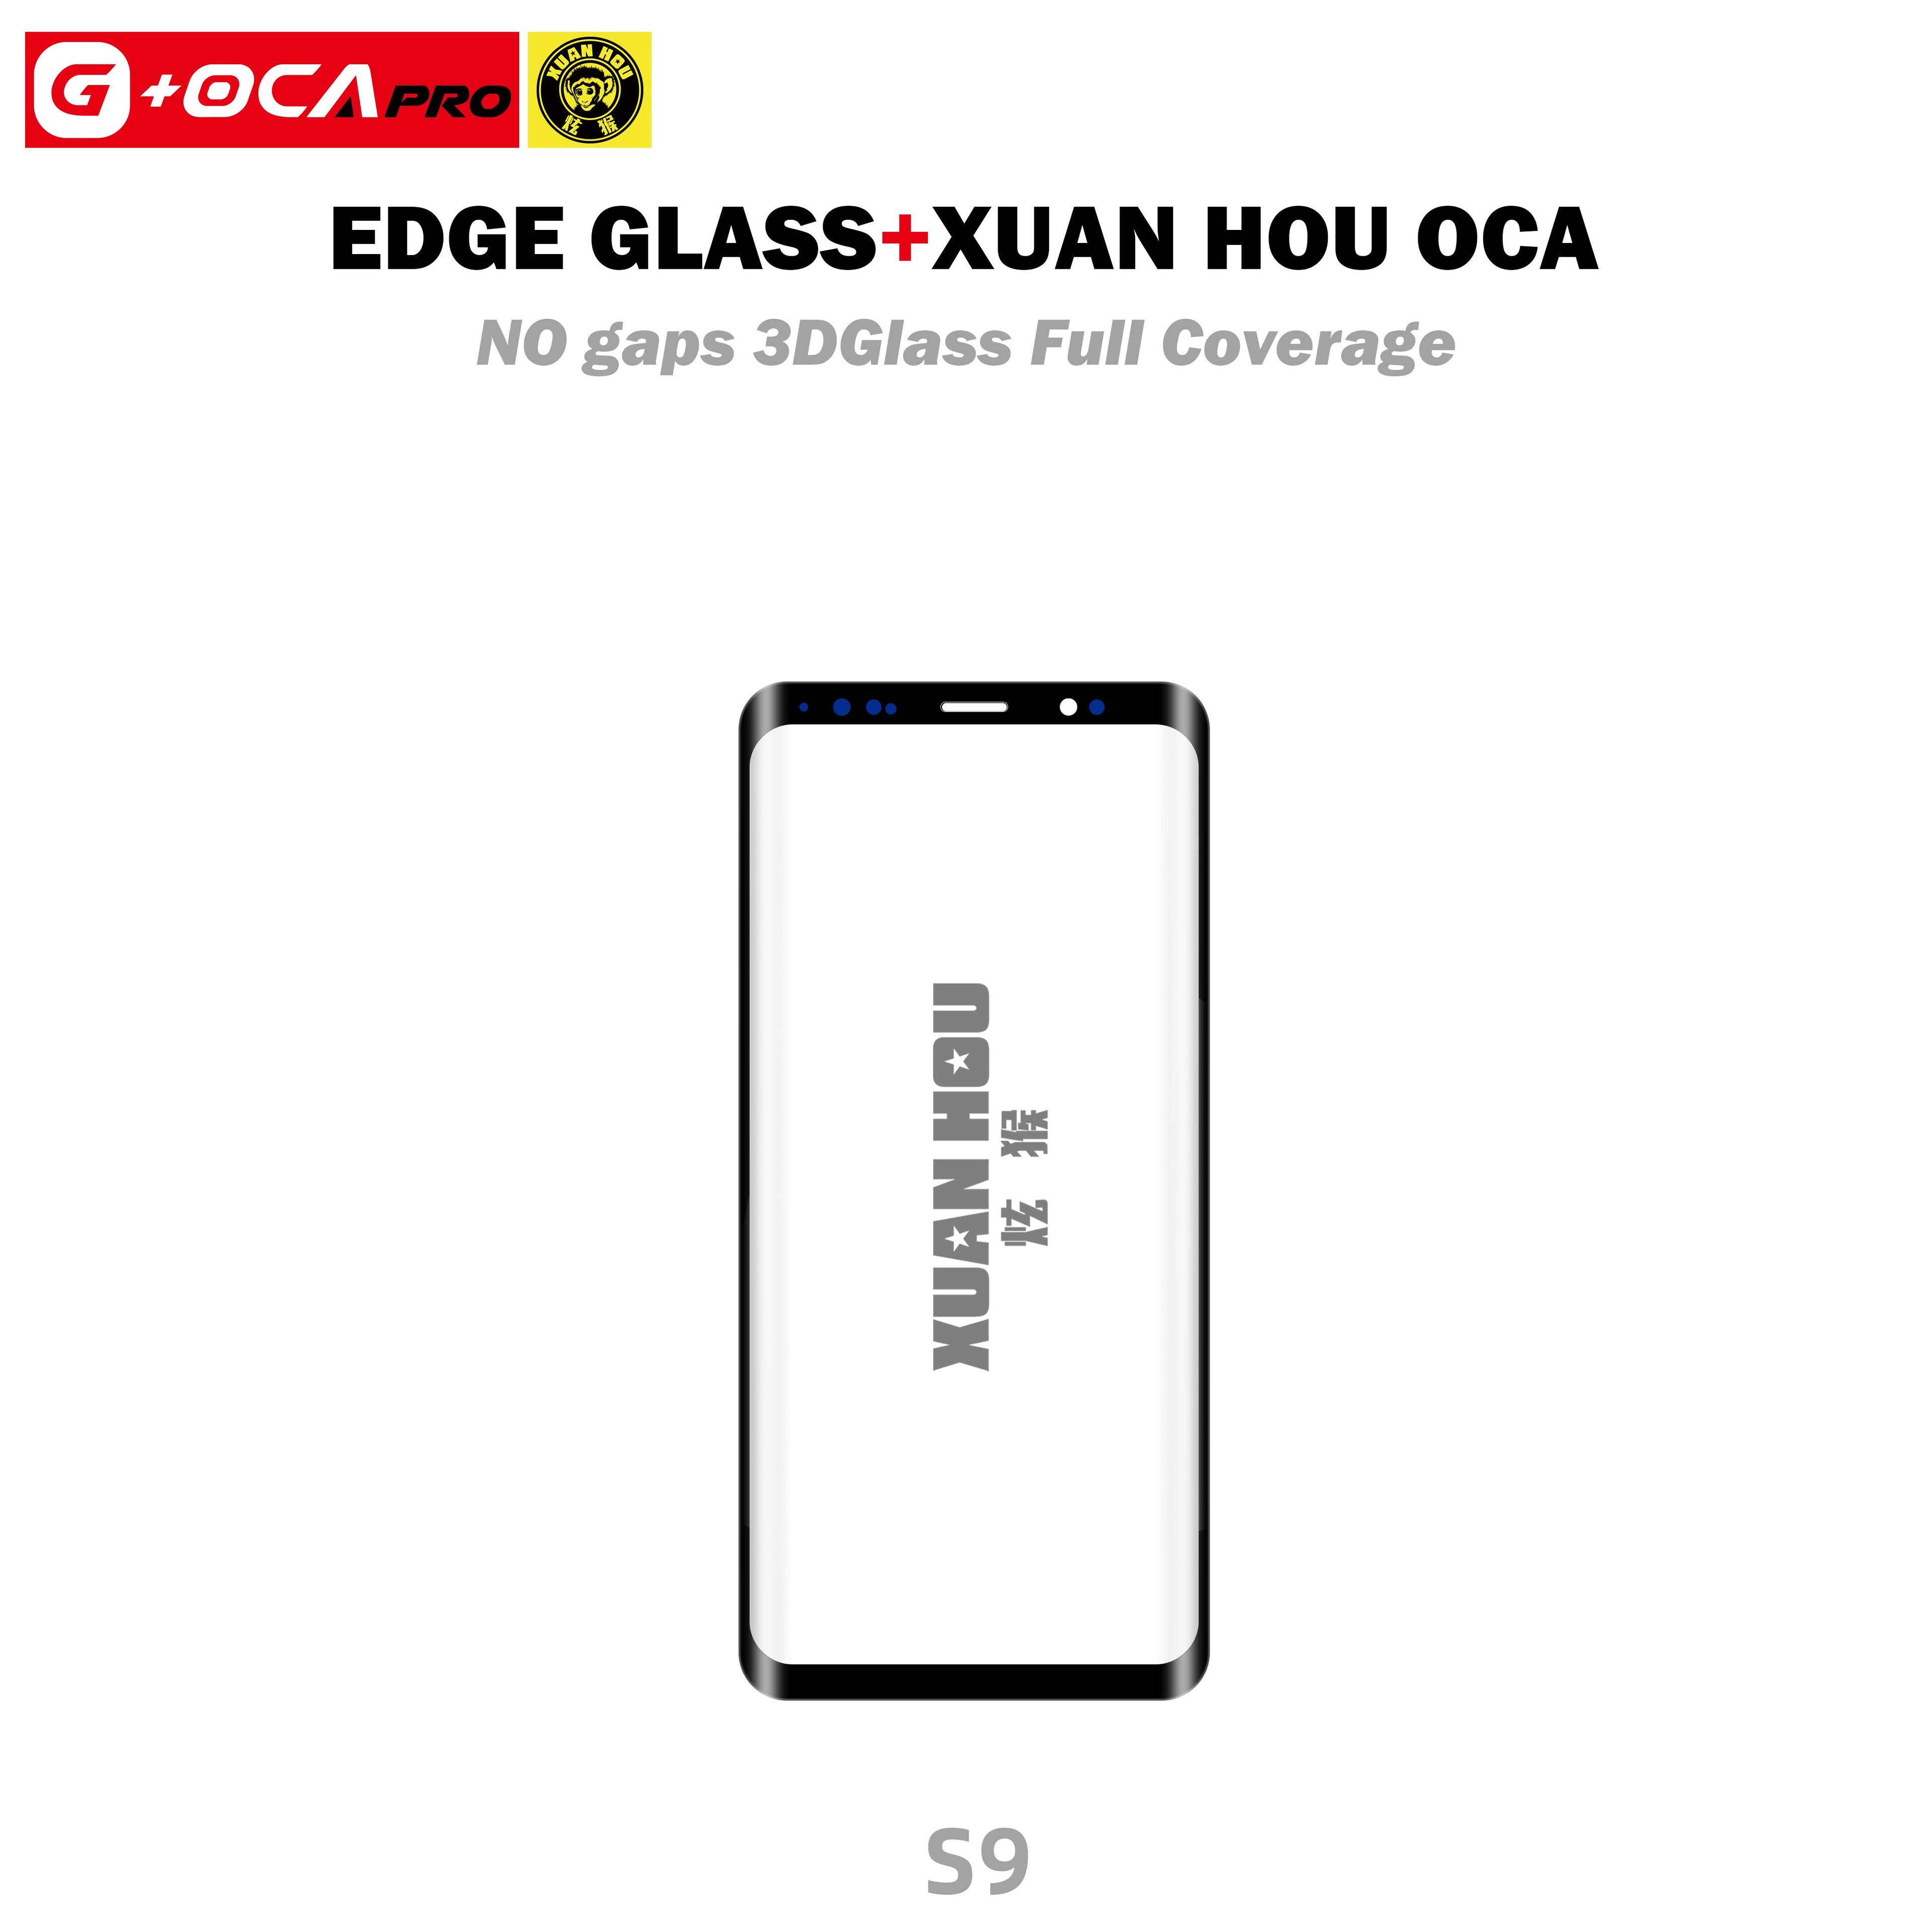 Szybka + Xuanhou OCA (z powłoką oleofobową) Samsung SM-G960 Galaxy S9